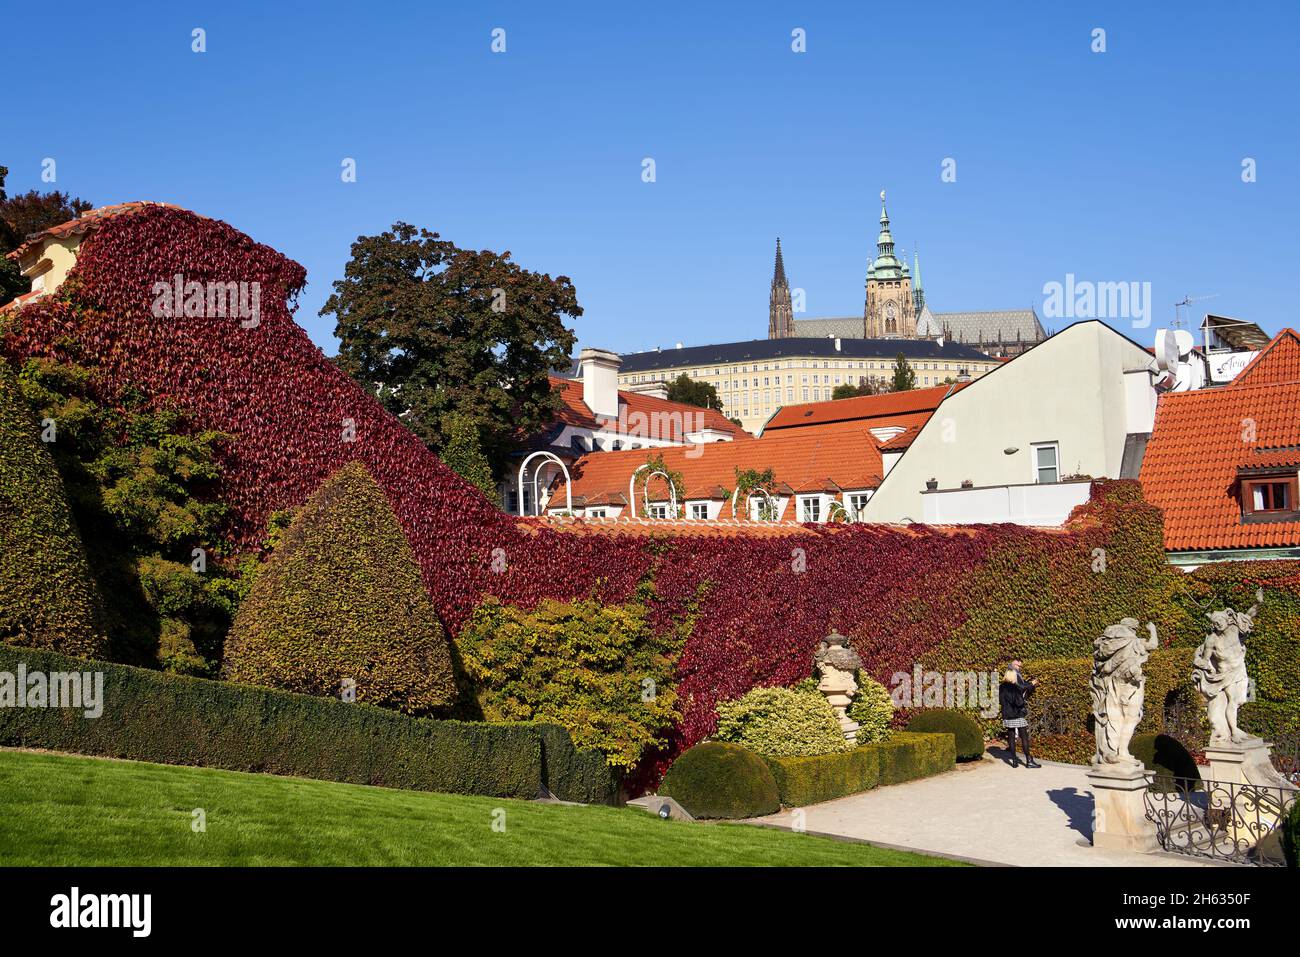 PRAGA, REPUBBLICA CECA - 10 OTTOBRE 2021: Vrtbovska zahrada o Giardino Vrtba in autunno, con il Castello di Praga sullo sfondo Foto Stock